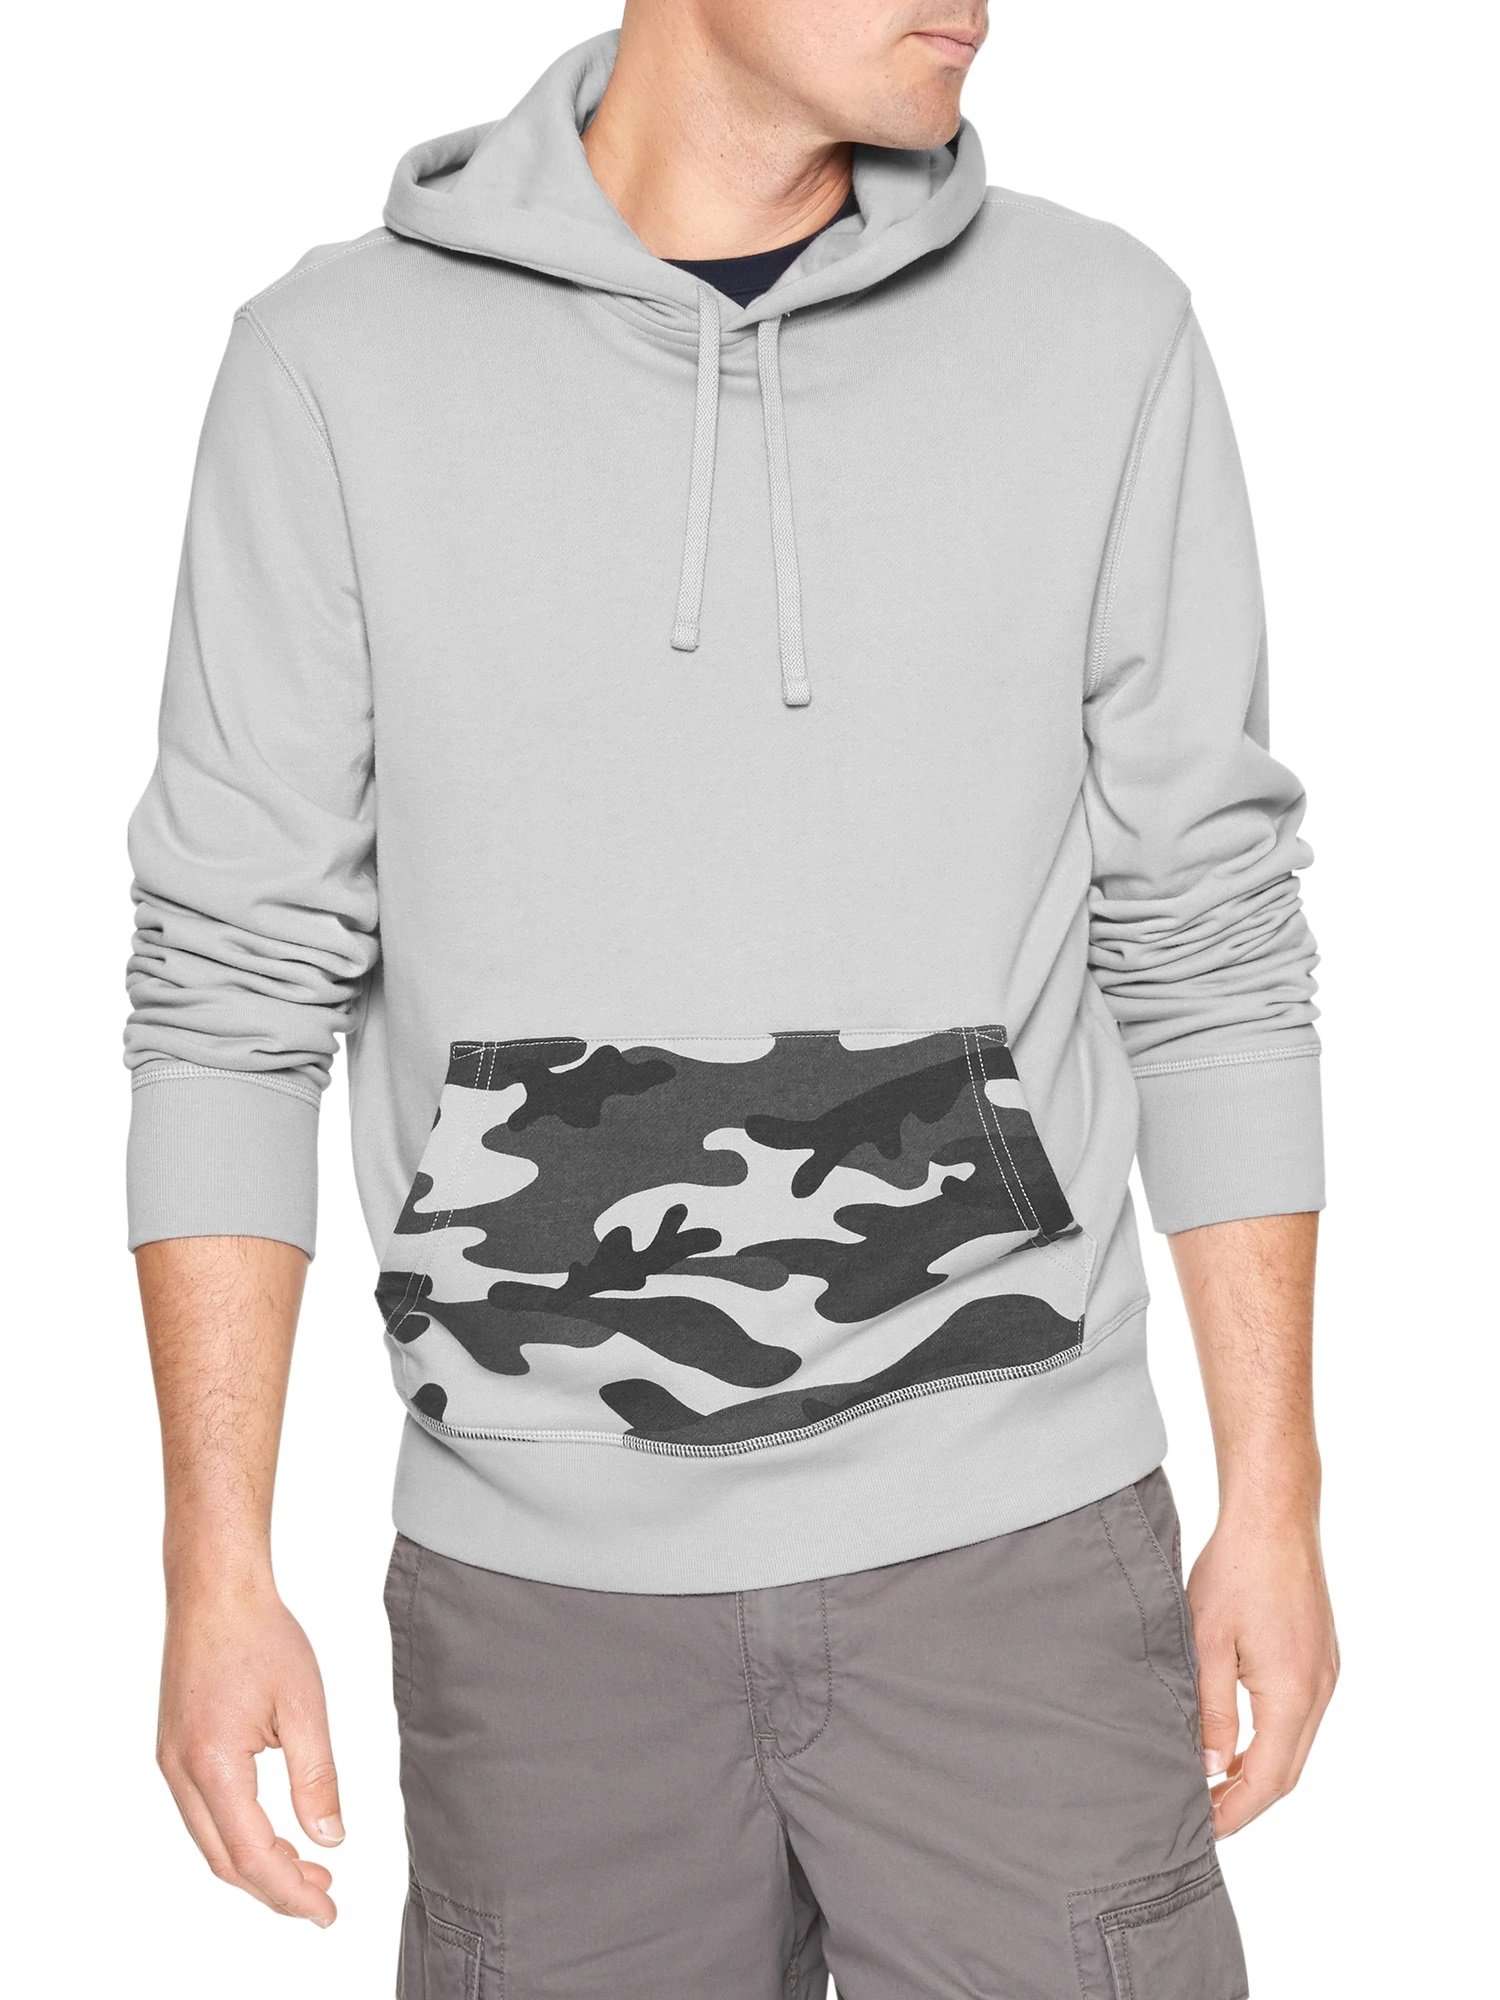 Kapüşonlu fransız havlu kumaşı sweatshirt product image